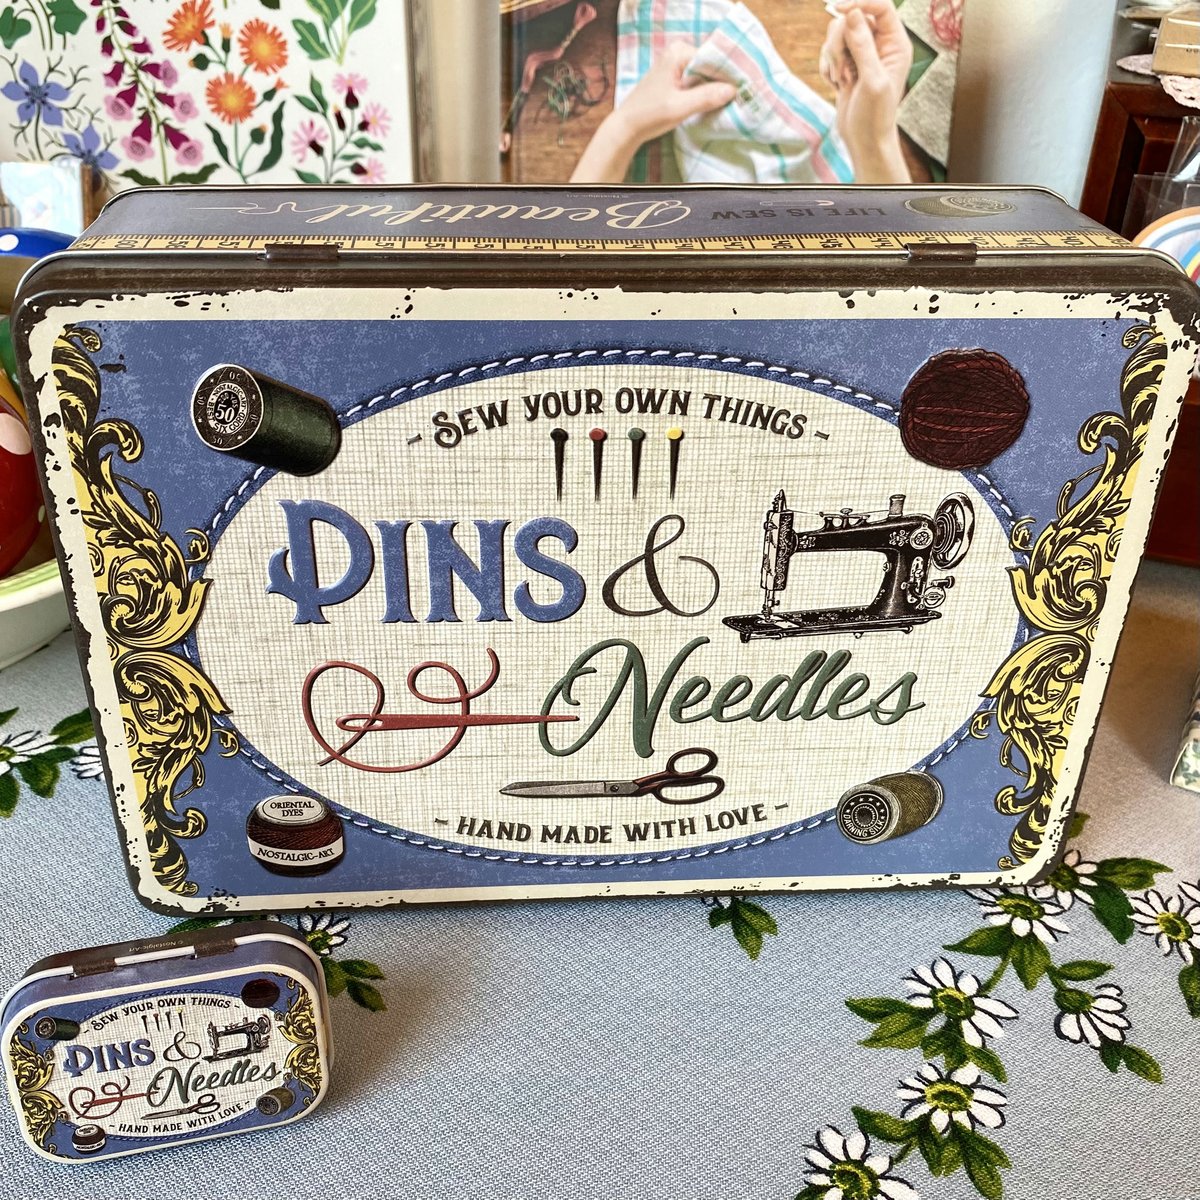 Image of Pins & Needles Sewing and Treasures Tins